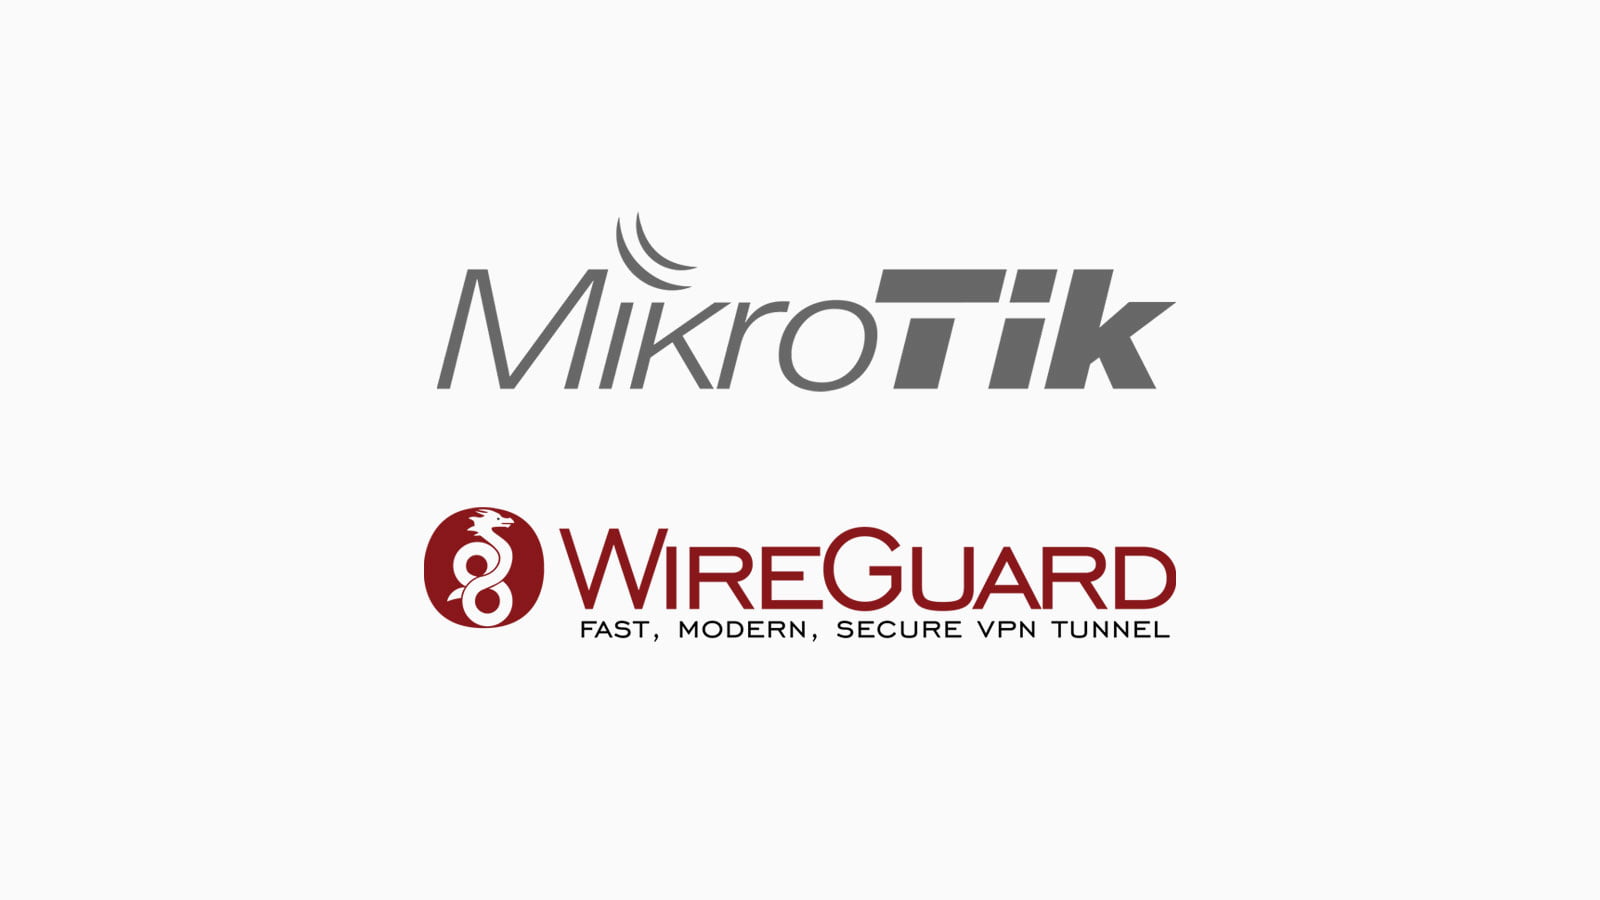 Cấu hình WireGuard VPN trên router Mikrotik và định tuyến tự động dịch vụ mạng quốc tế